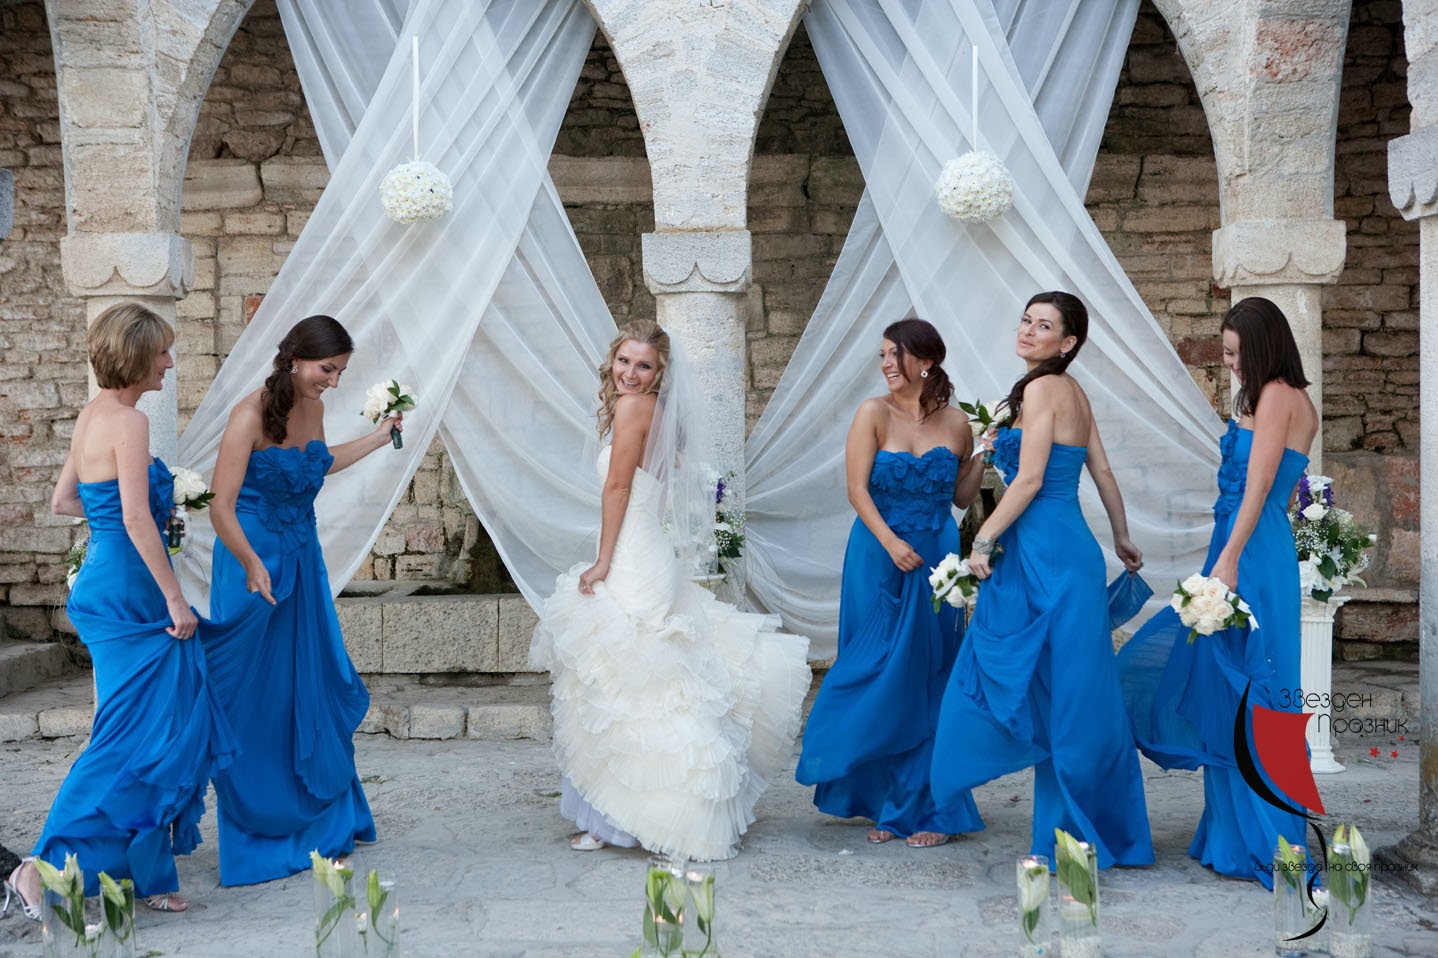 булката и шаферките с тъмно сини шаферски рокли се забавляват на фотосесията в Балчик